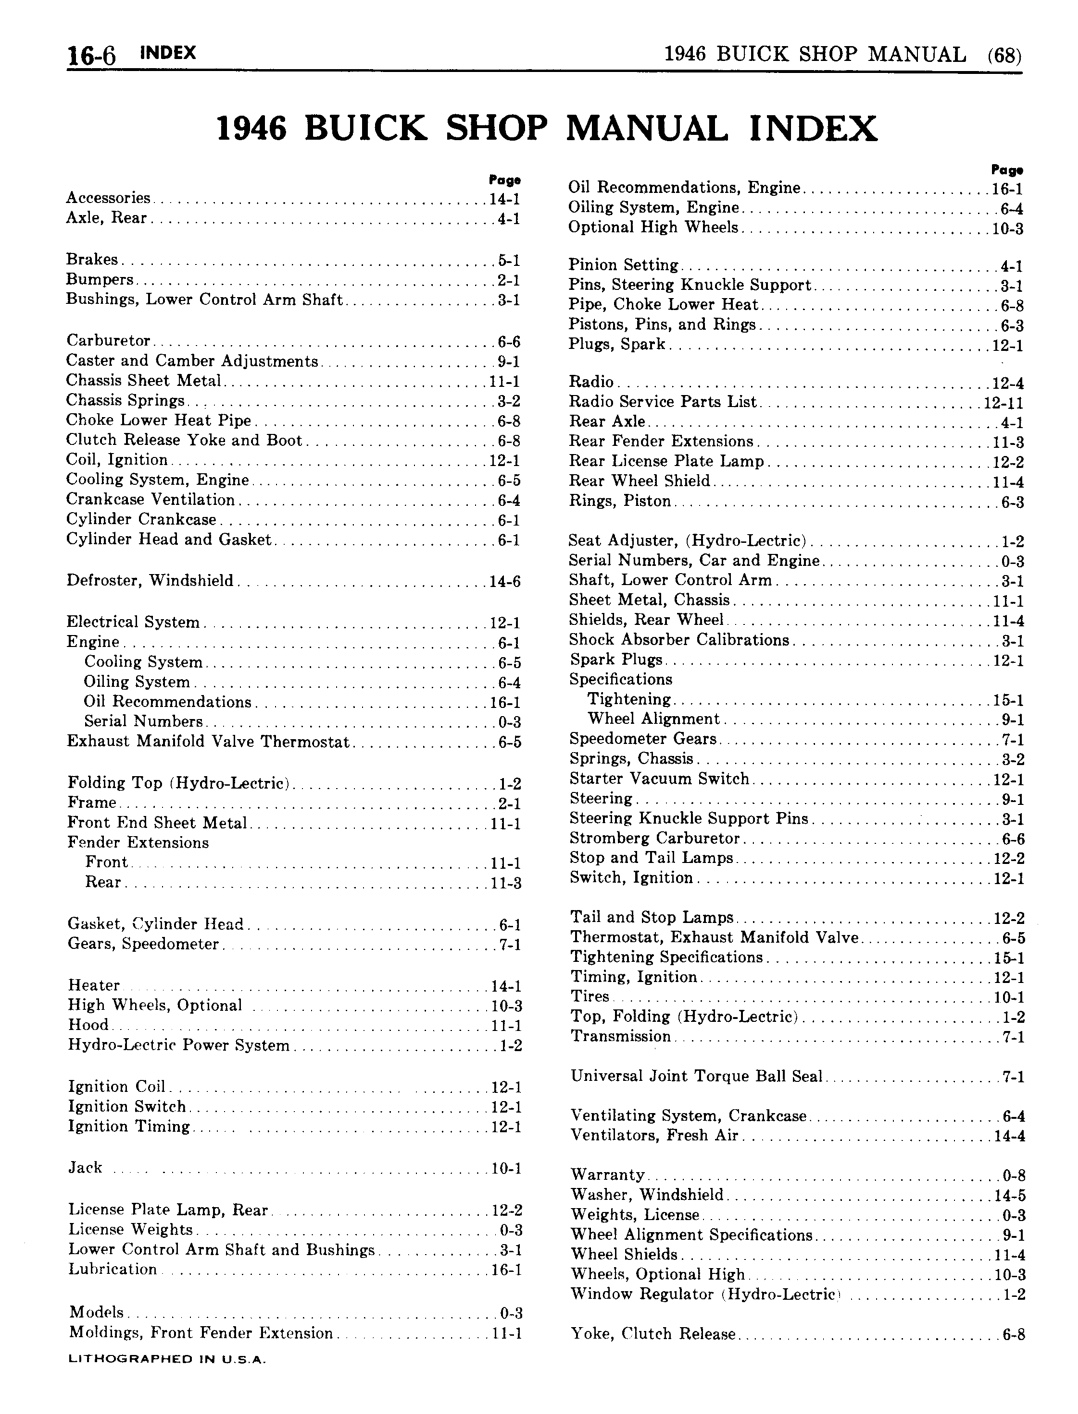 n_15 1946 Buick Shop Manual - Lubrication-006-006.jpg